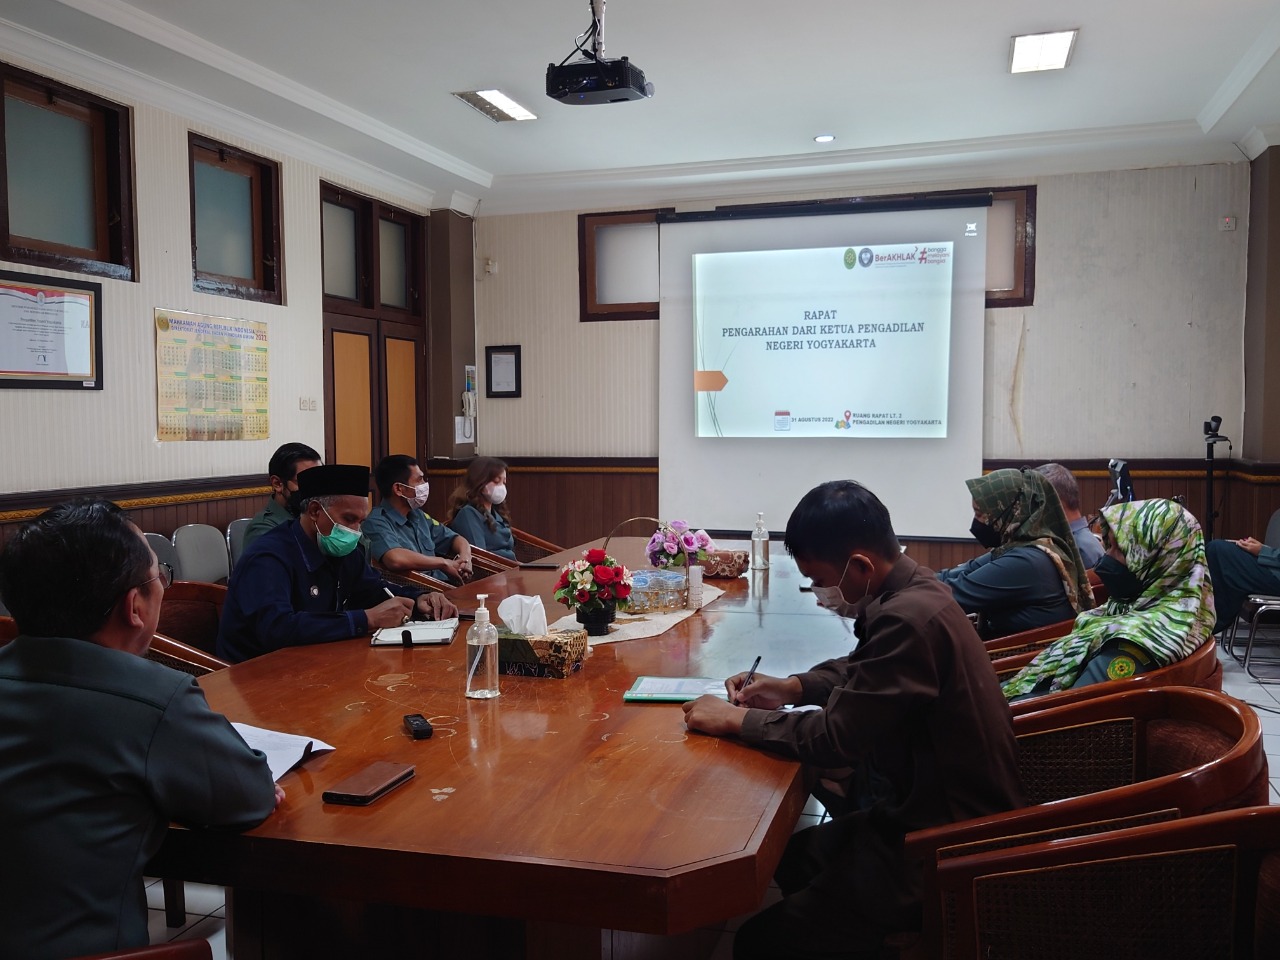 Rapat Pengarahan Ketua Pengadilan Negeri Yogyakarta 